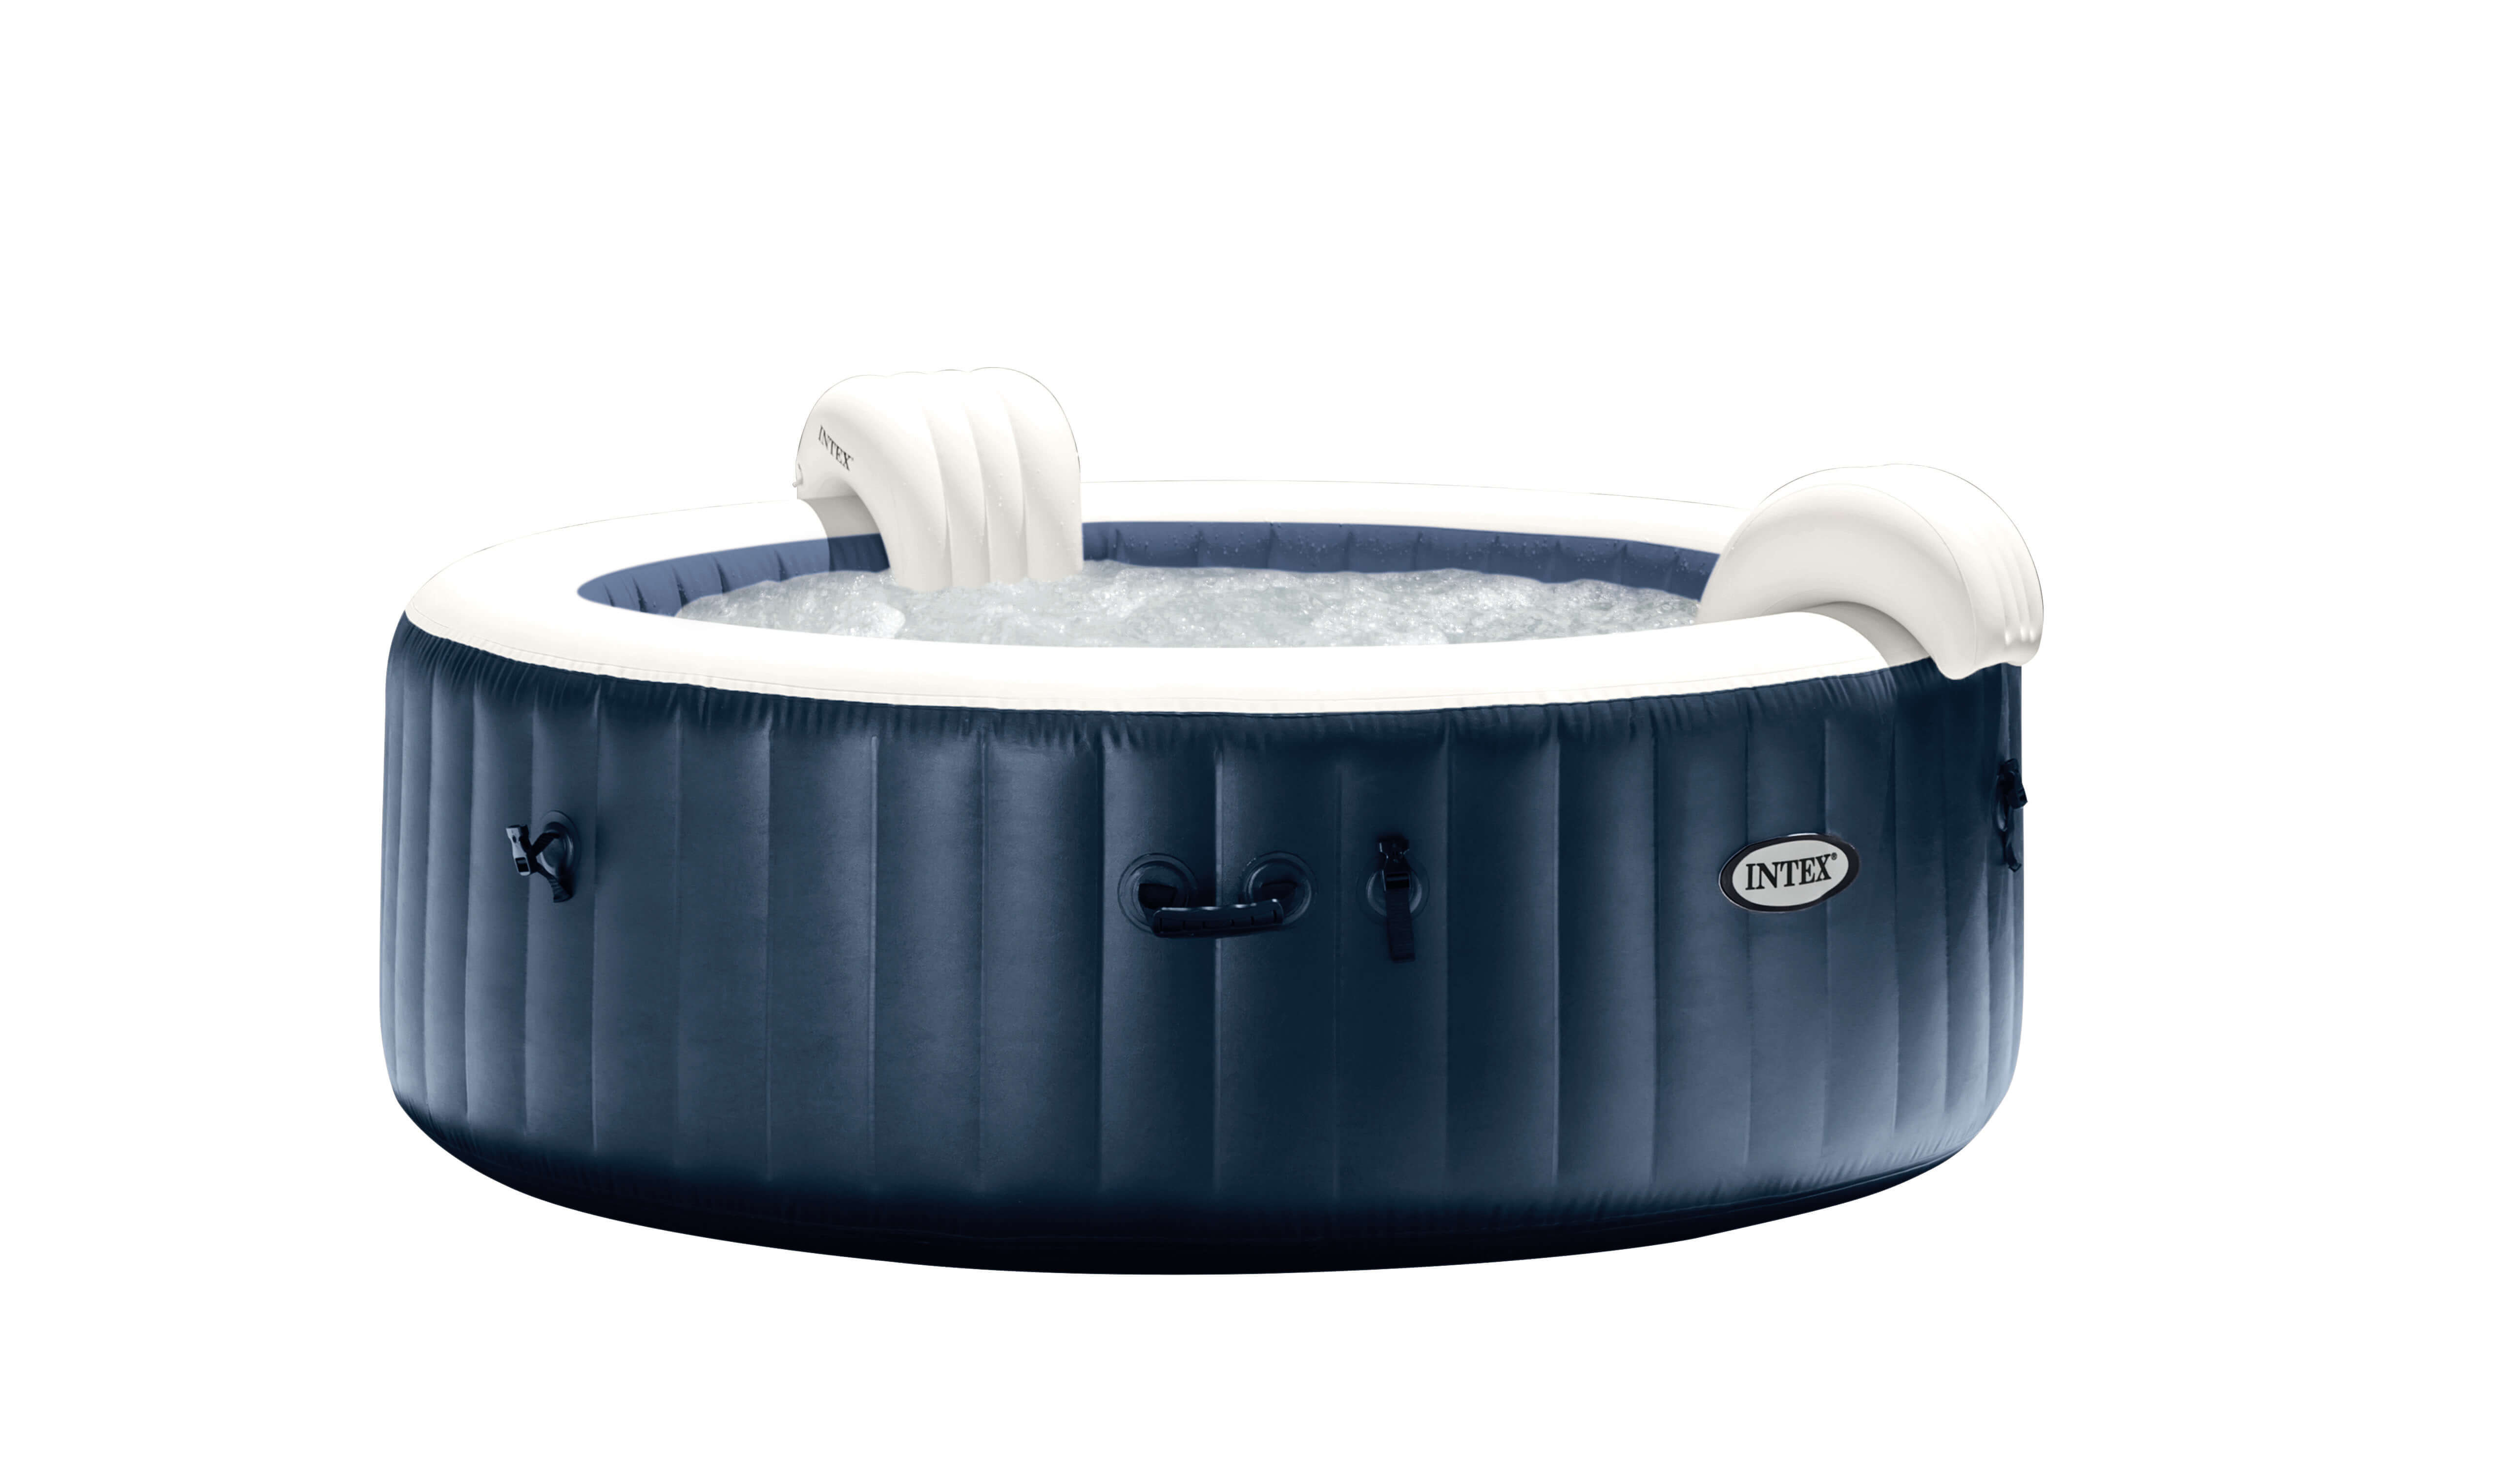 Надувной бассейн джакузи с подогревом. Intex PURESPA Plus 85 Inflatable hot Tub. Надувное джакузи Intex. 28426 Intex. Бассейн Интекс с джакузи.